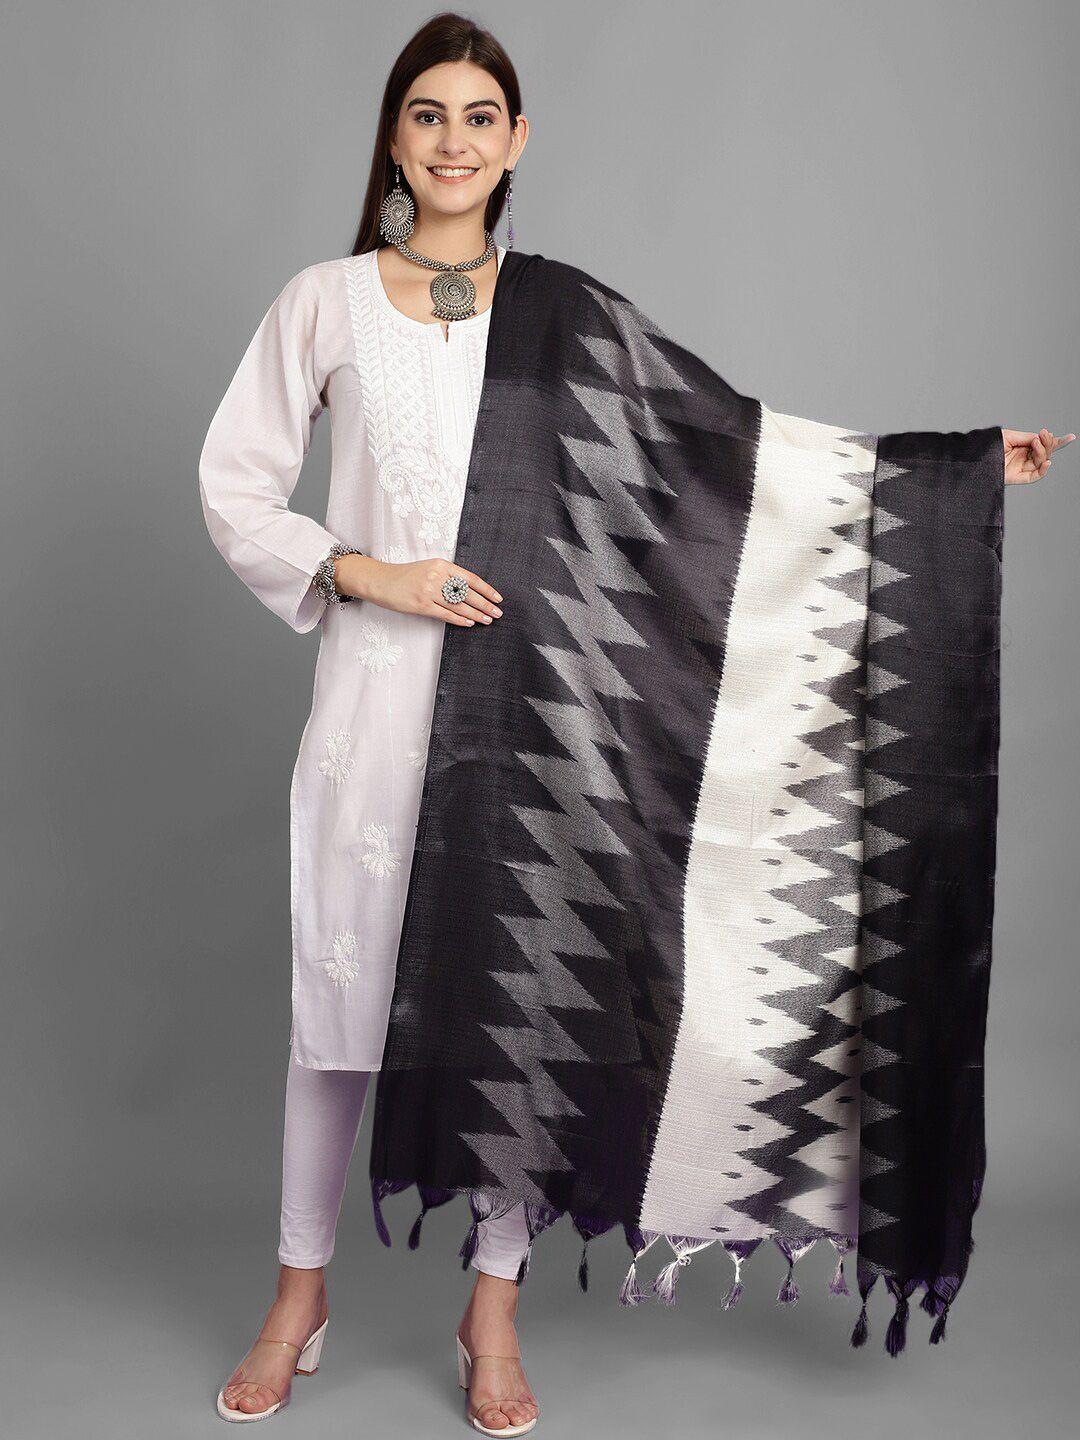 loom legacy ethnic motifs printed art silk dupatta